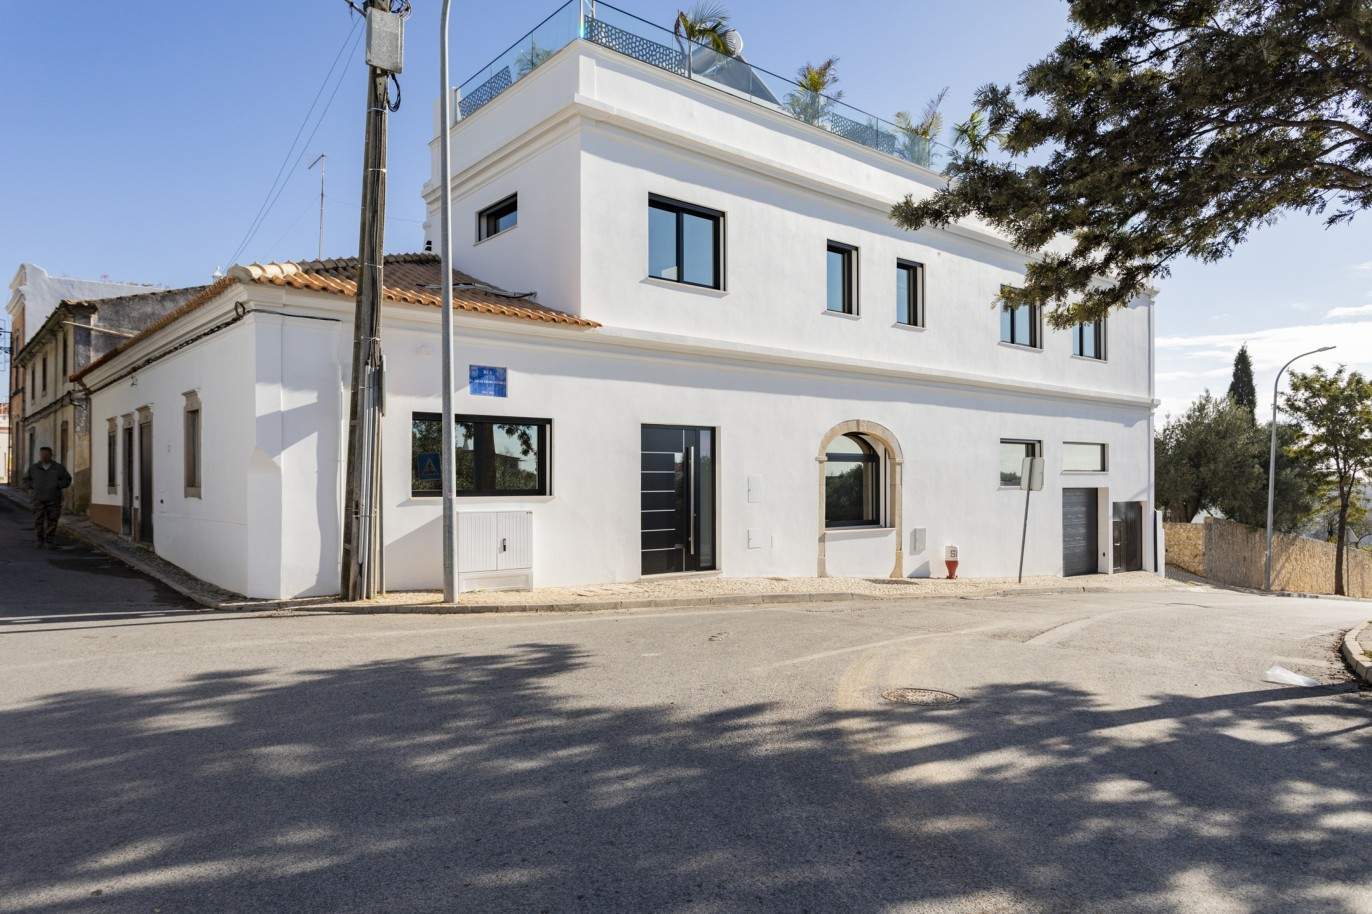 Moradia V3, com piscina, para venda em Santa Barbara de Nexe, Algarve_213399